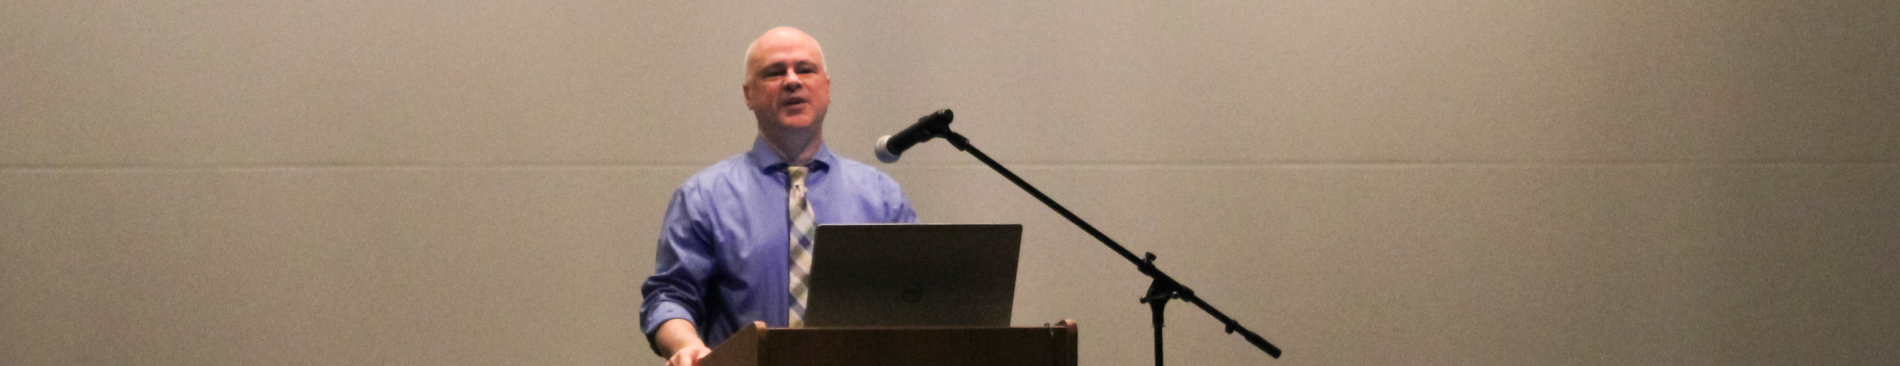 Dr. Michael Augros delivers a lecture